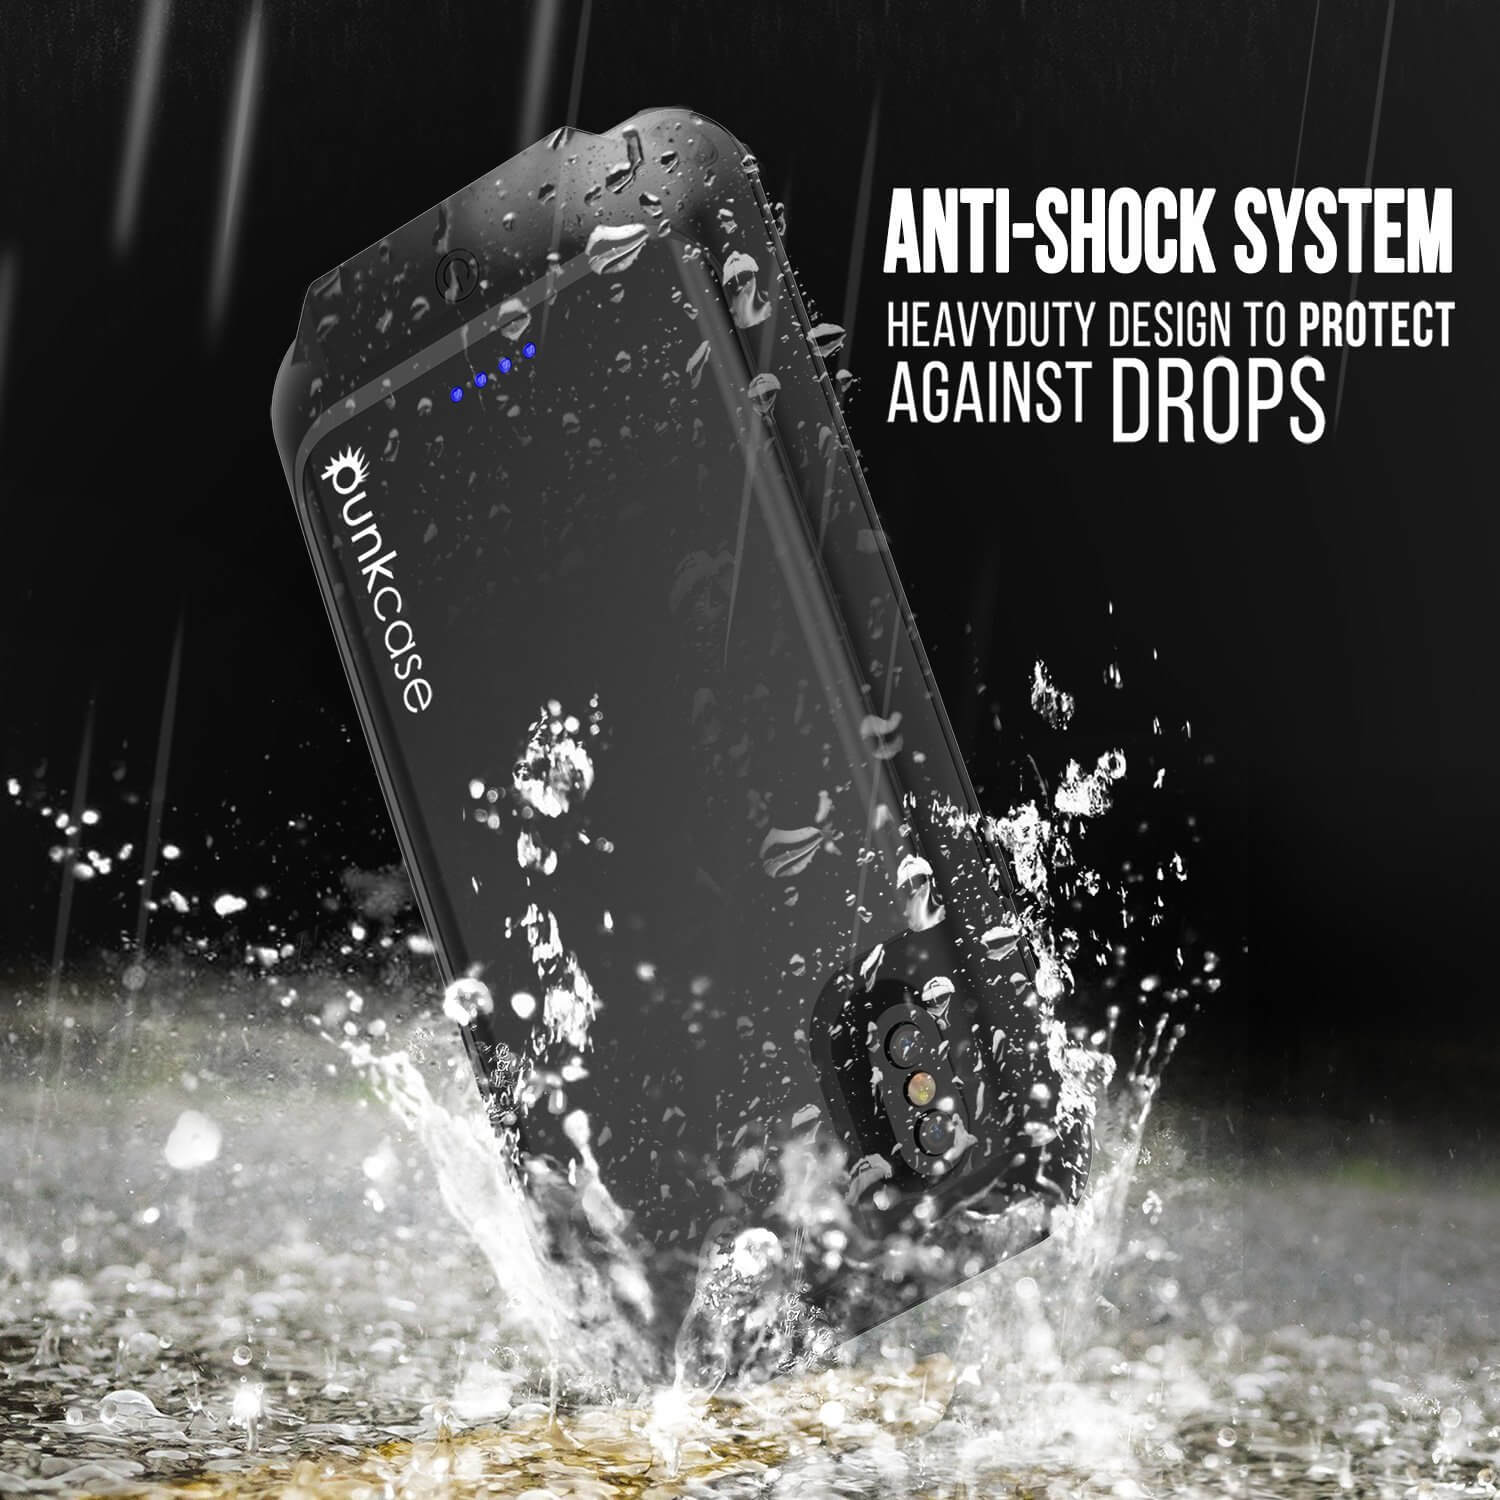 PunkJuice iPhone X Battery Case, Waterproof, [Ultra Slim] [Black]